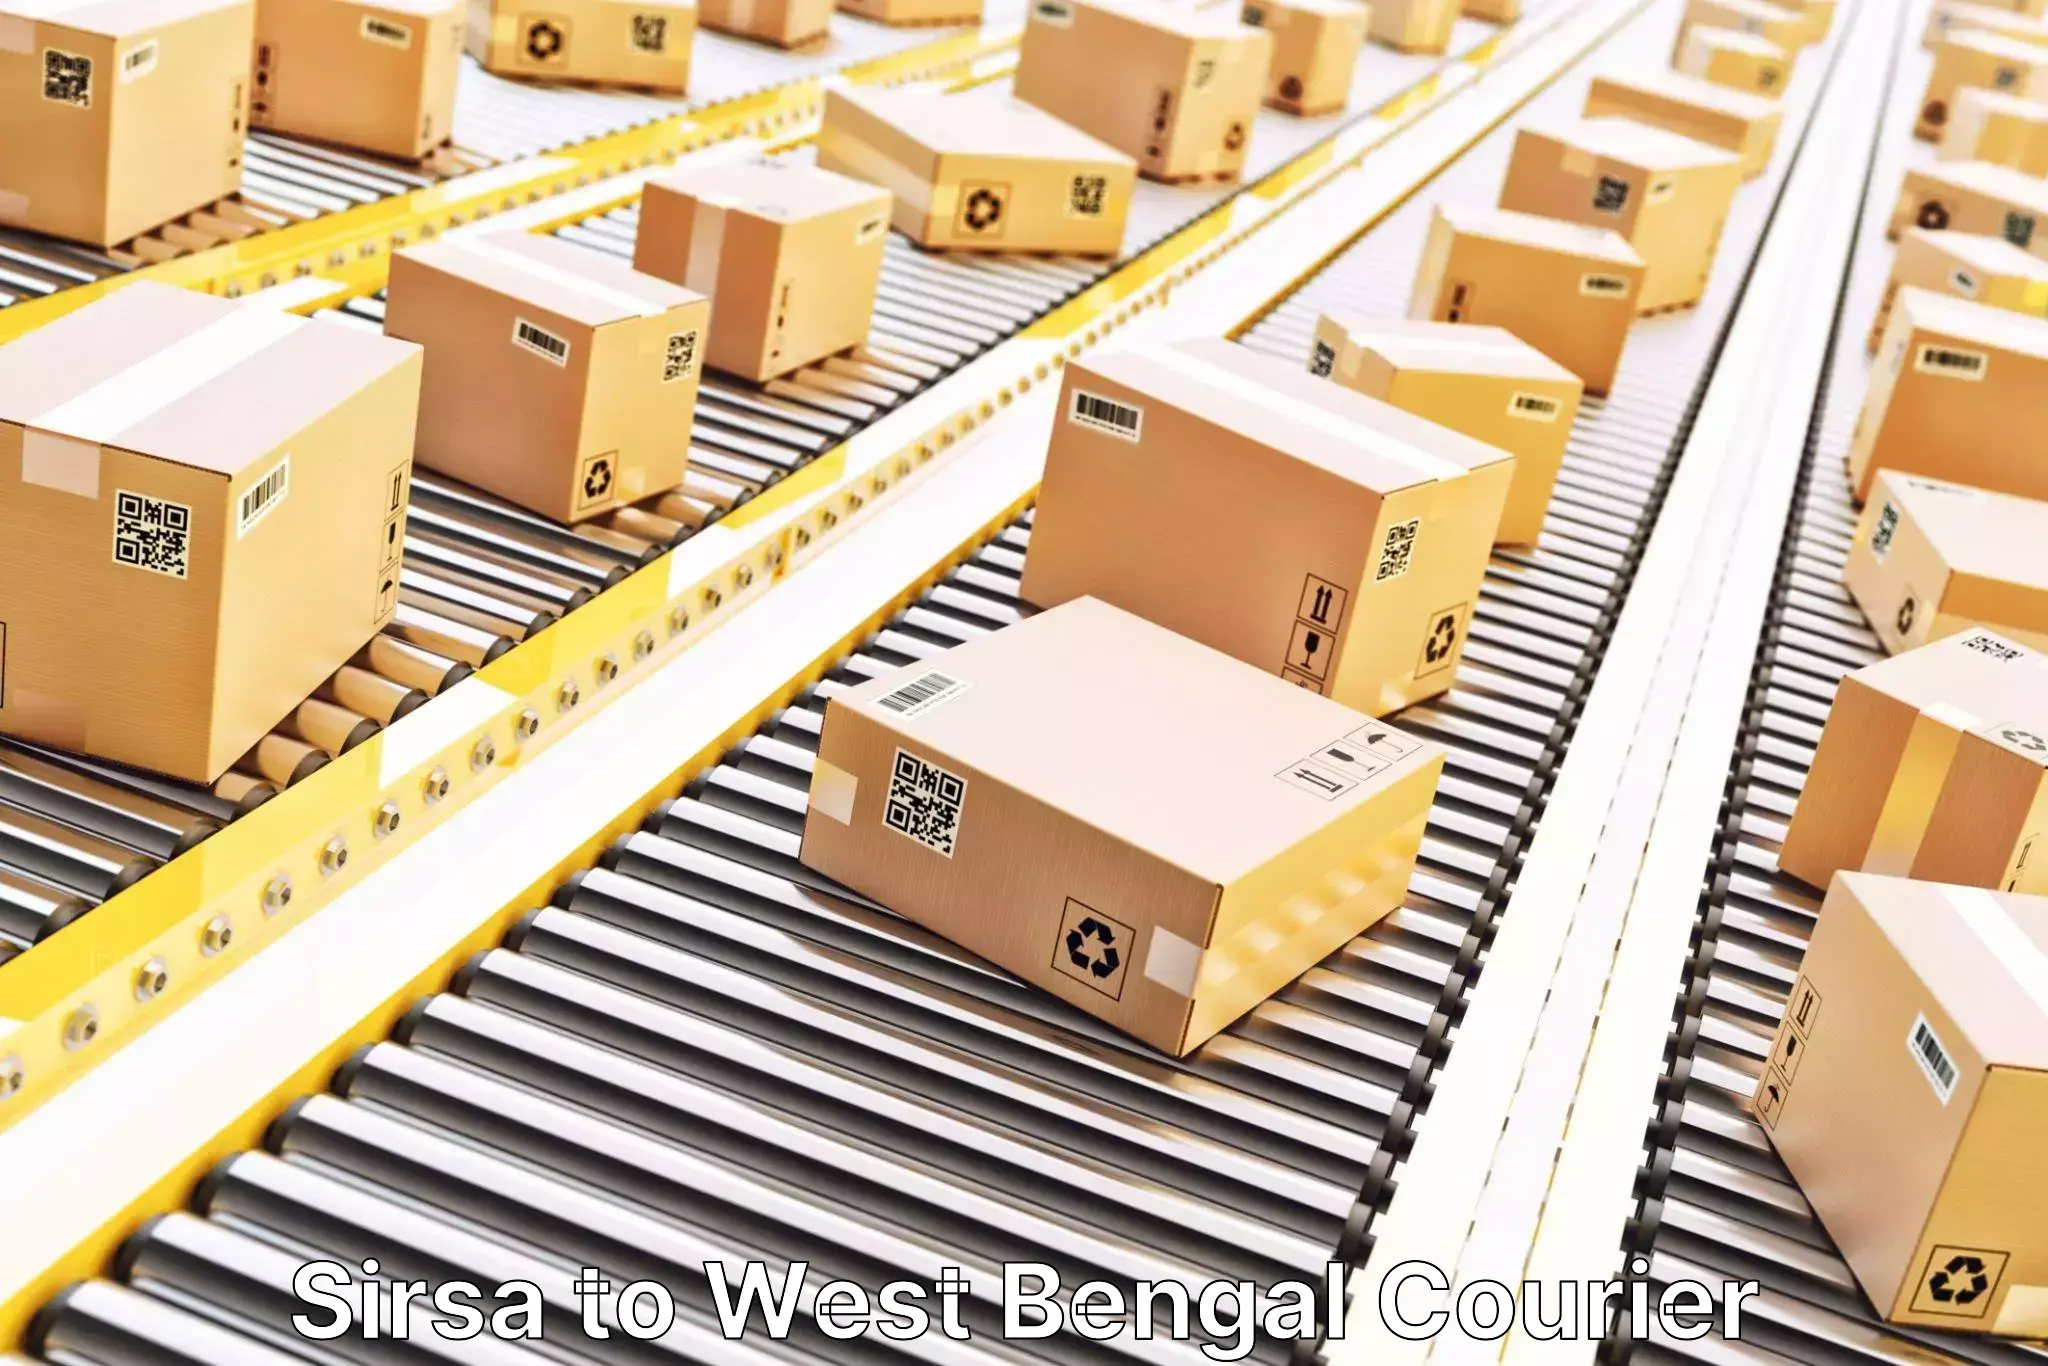 Fast-track shipping solutions Sirsa to Kolkata Port